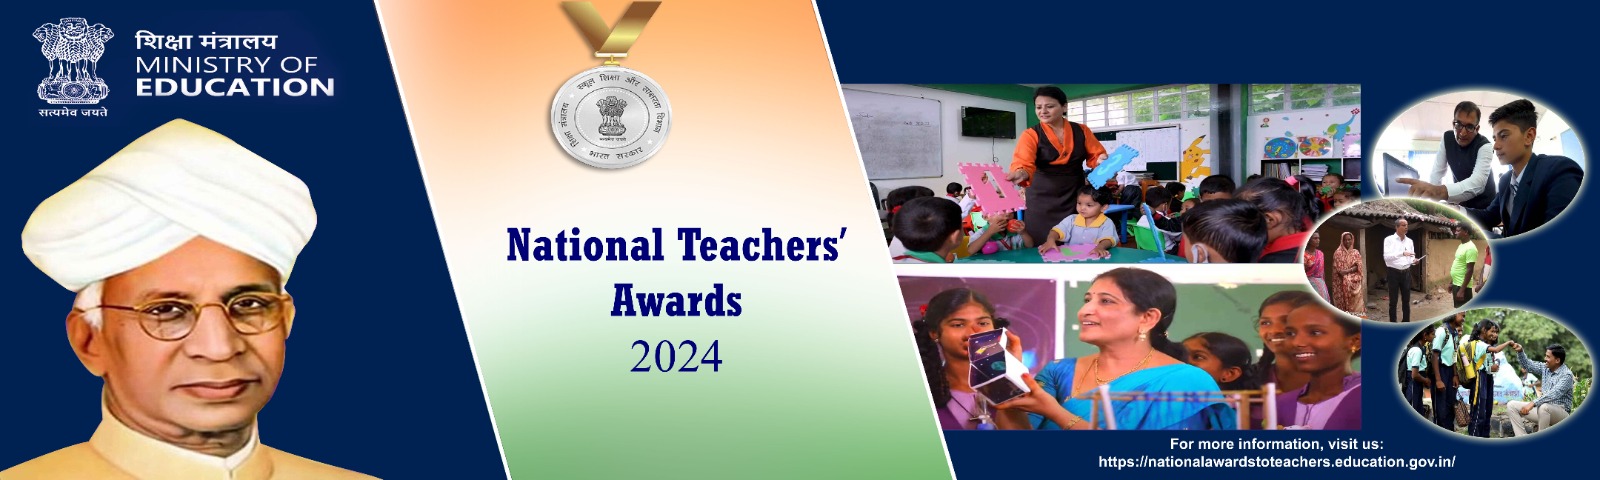 National Award for teachers